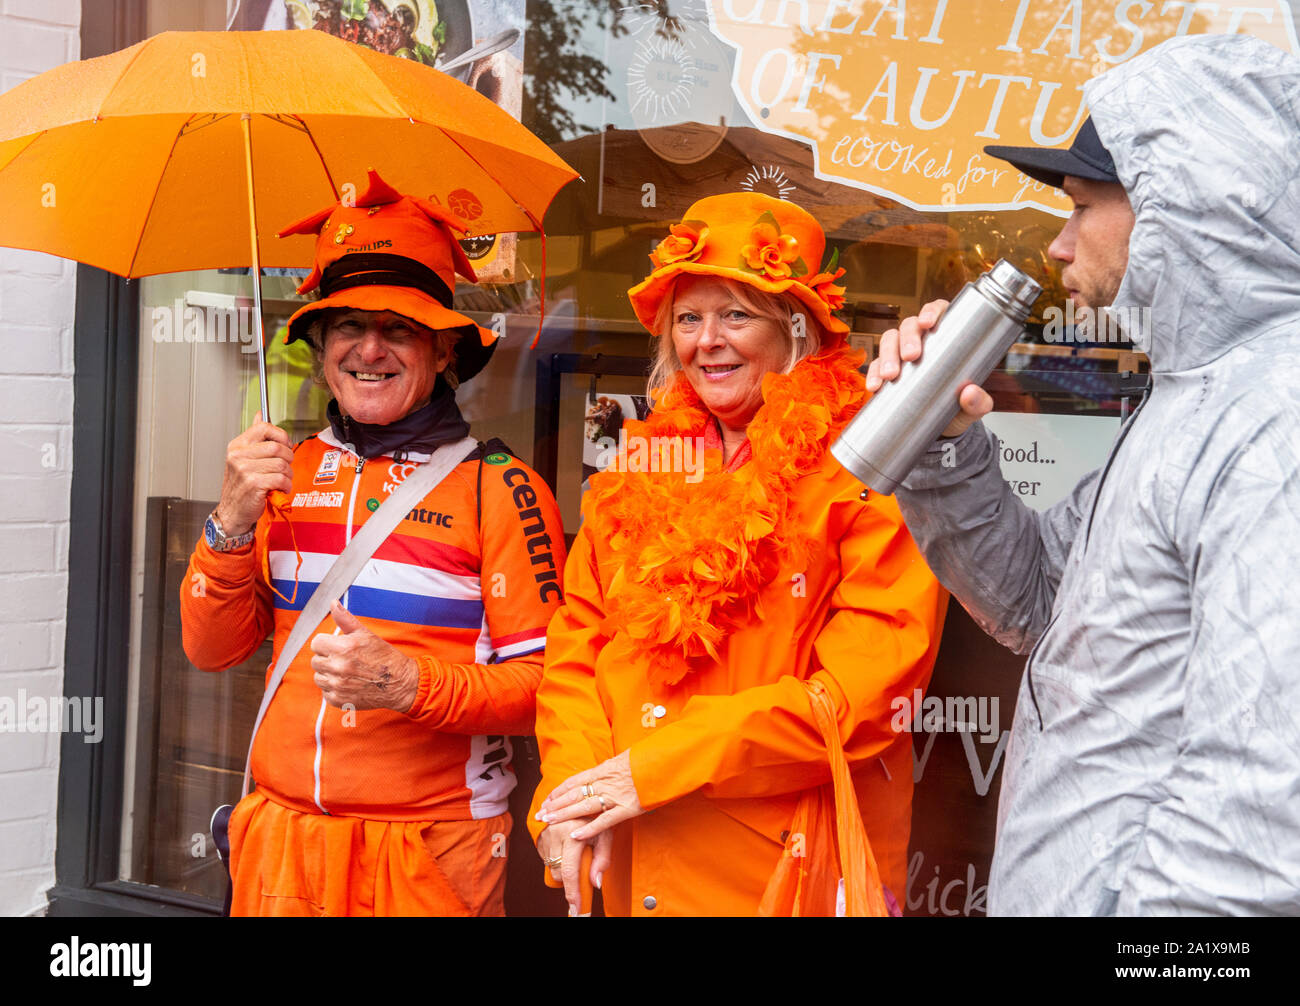 Holländische Fans in Deckung von heftigem Regen am letzten Tag der UCI Rad WM, Harrogate, UK, 29. September 2019 Stockfoto